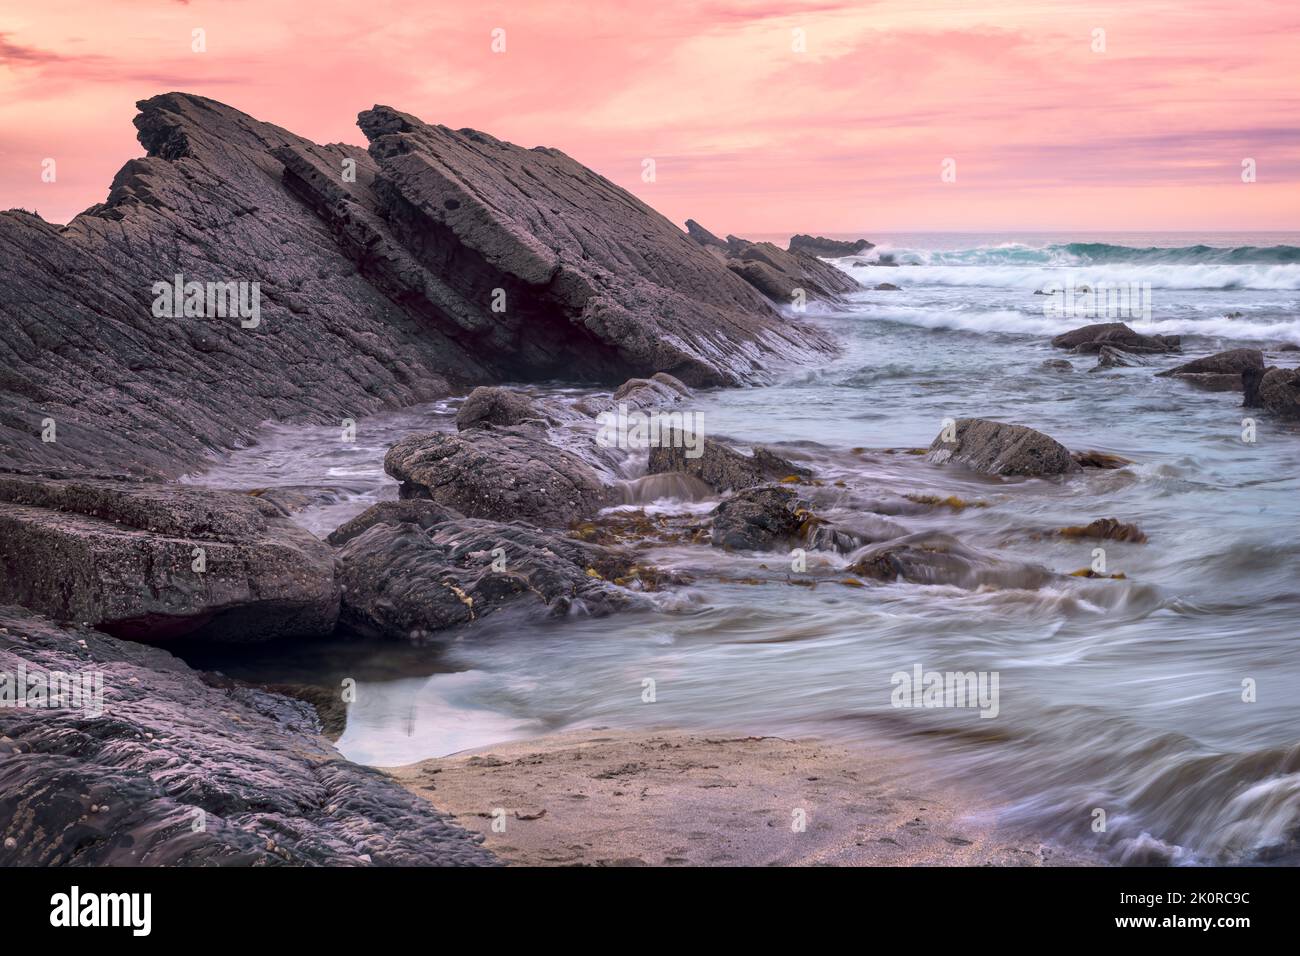 Situata sulla costa atlantica, la baia di Crackington Haven è circondata da spettacolari scogliere e ha un fenomeno geologico che prende il nome da essa; la C Foto Stock